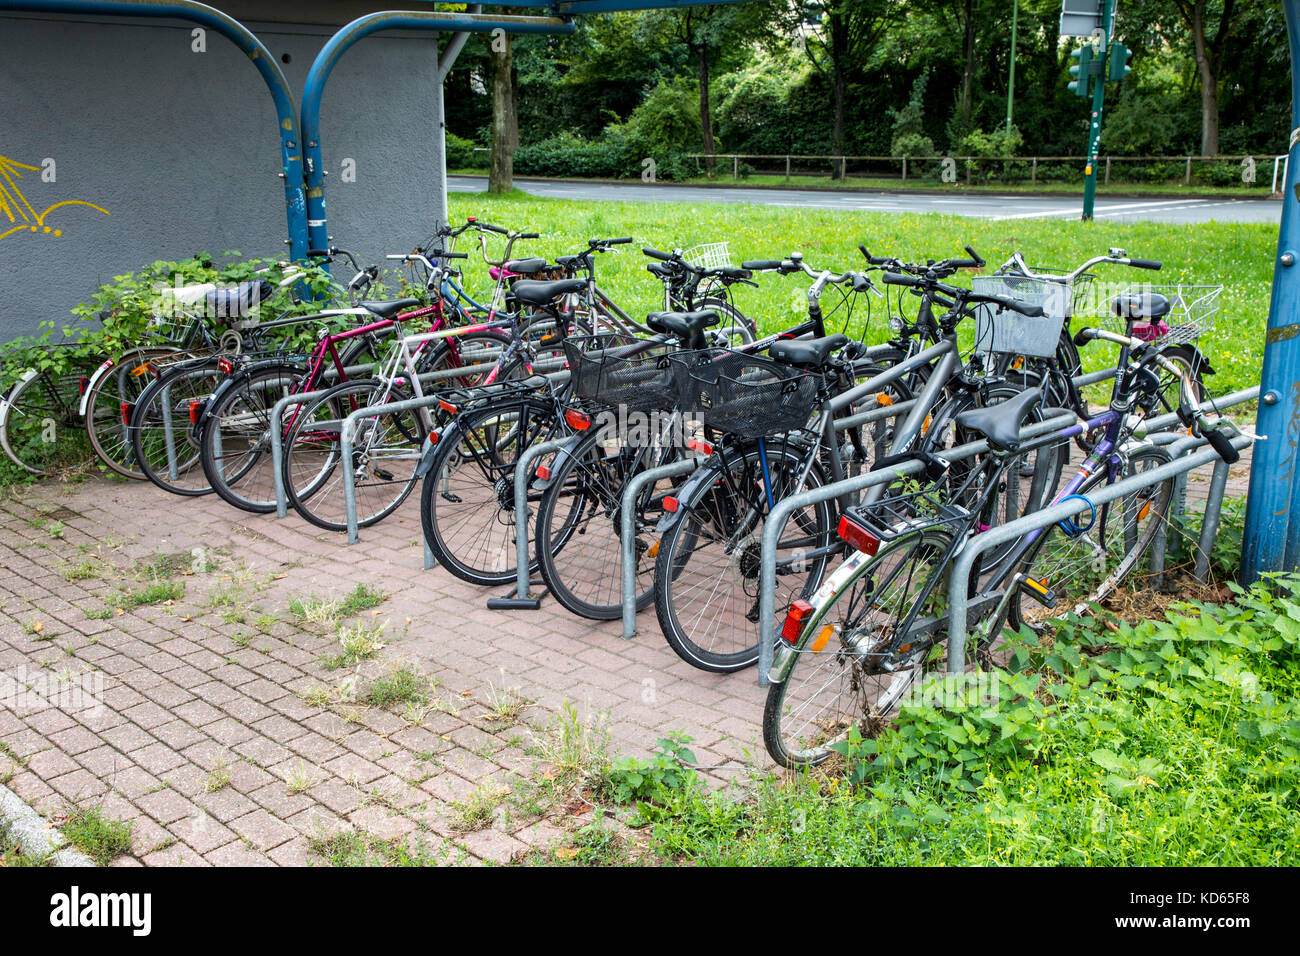 Il parcheggio per le bici sorge in una città, molte moto sono parcheggiate qui, Foto Stock